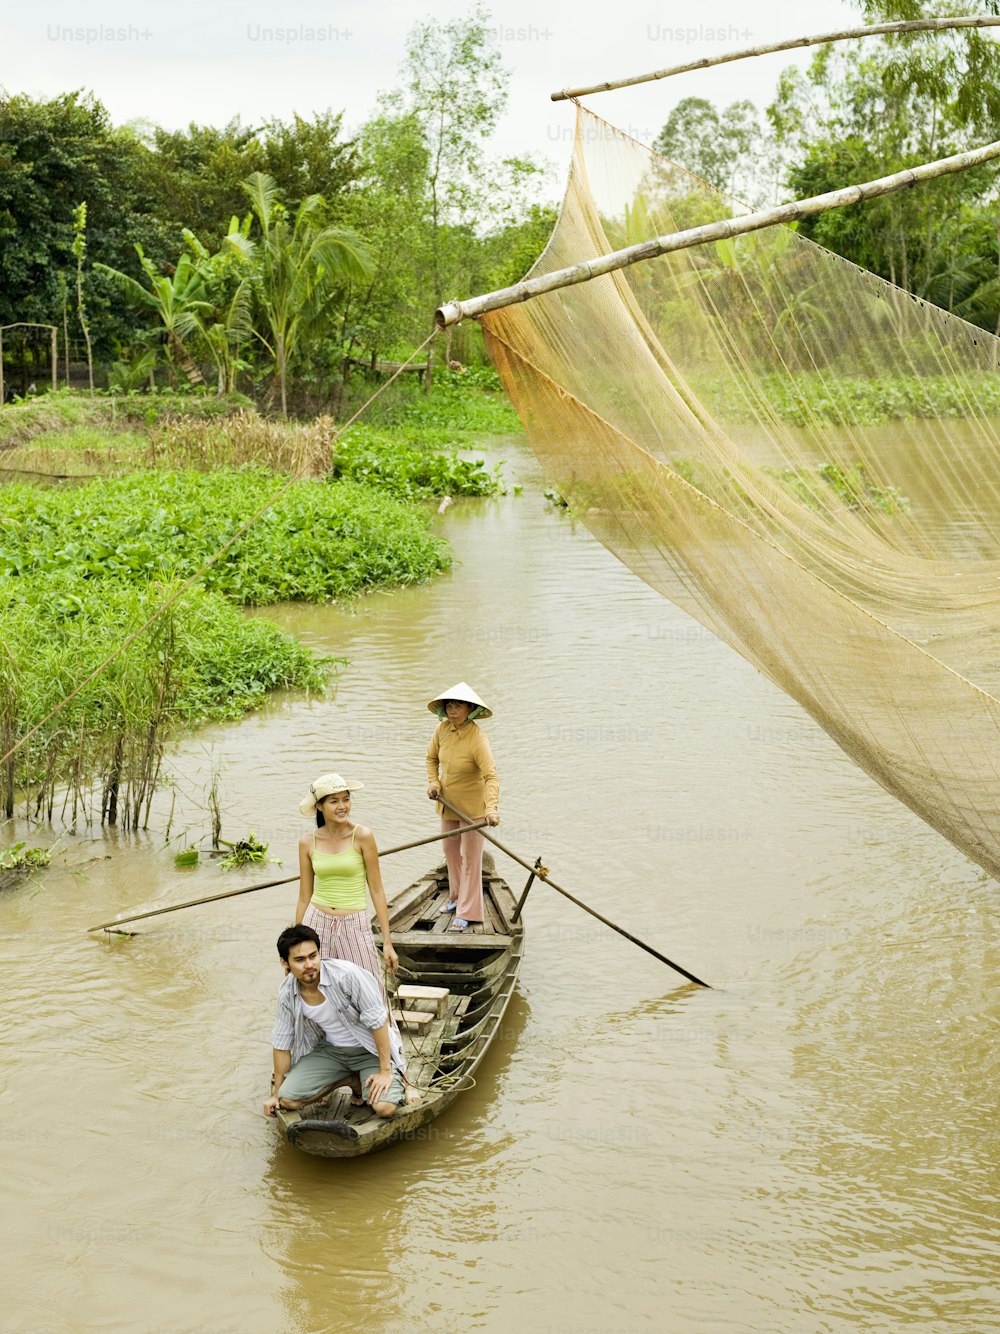 Eine Gruppe von Menschen, die auf einem Boot in einem Fluss fahren